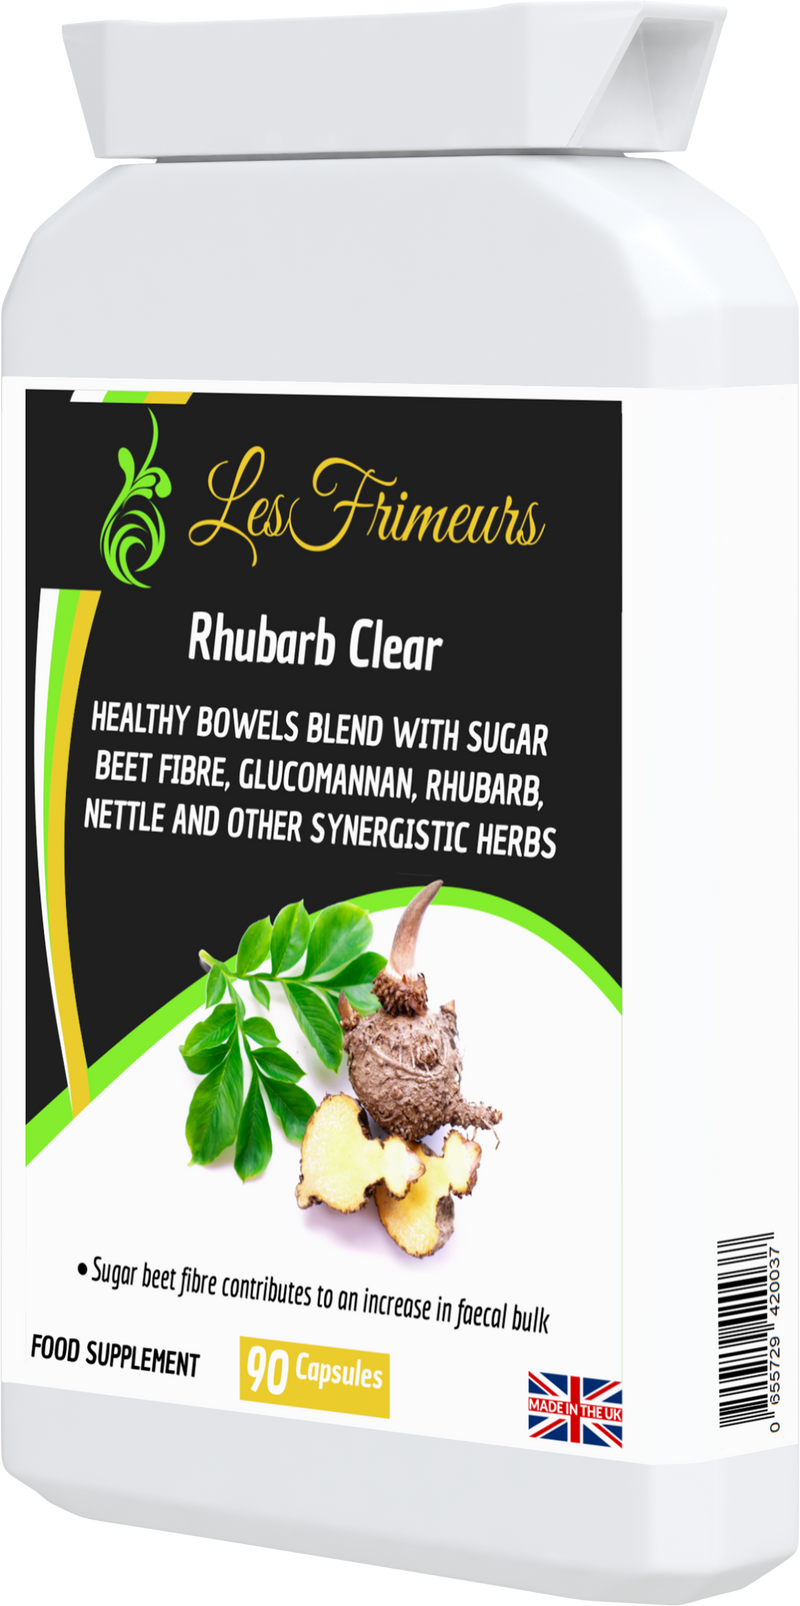 Rhubarb Clear